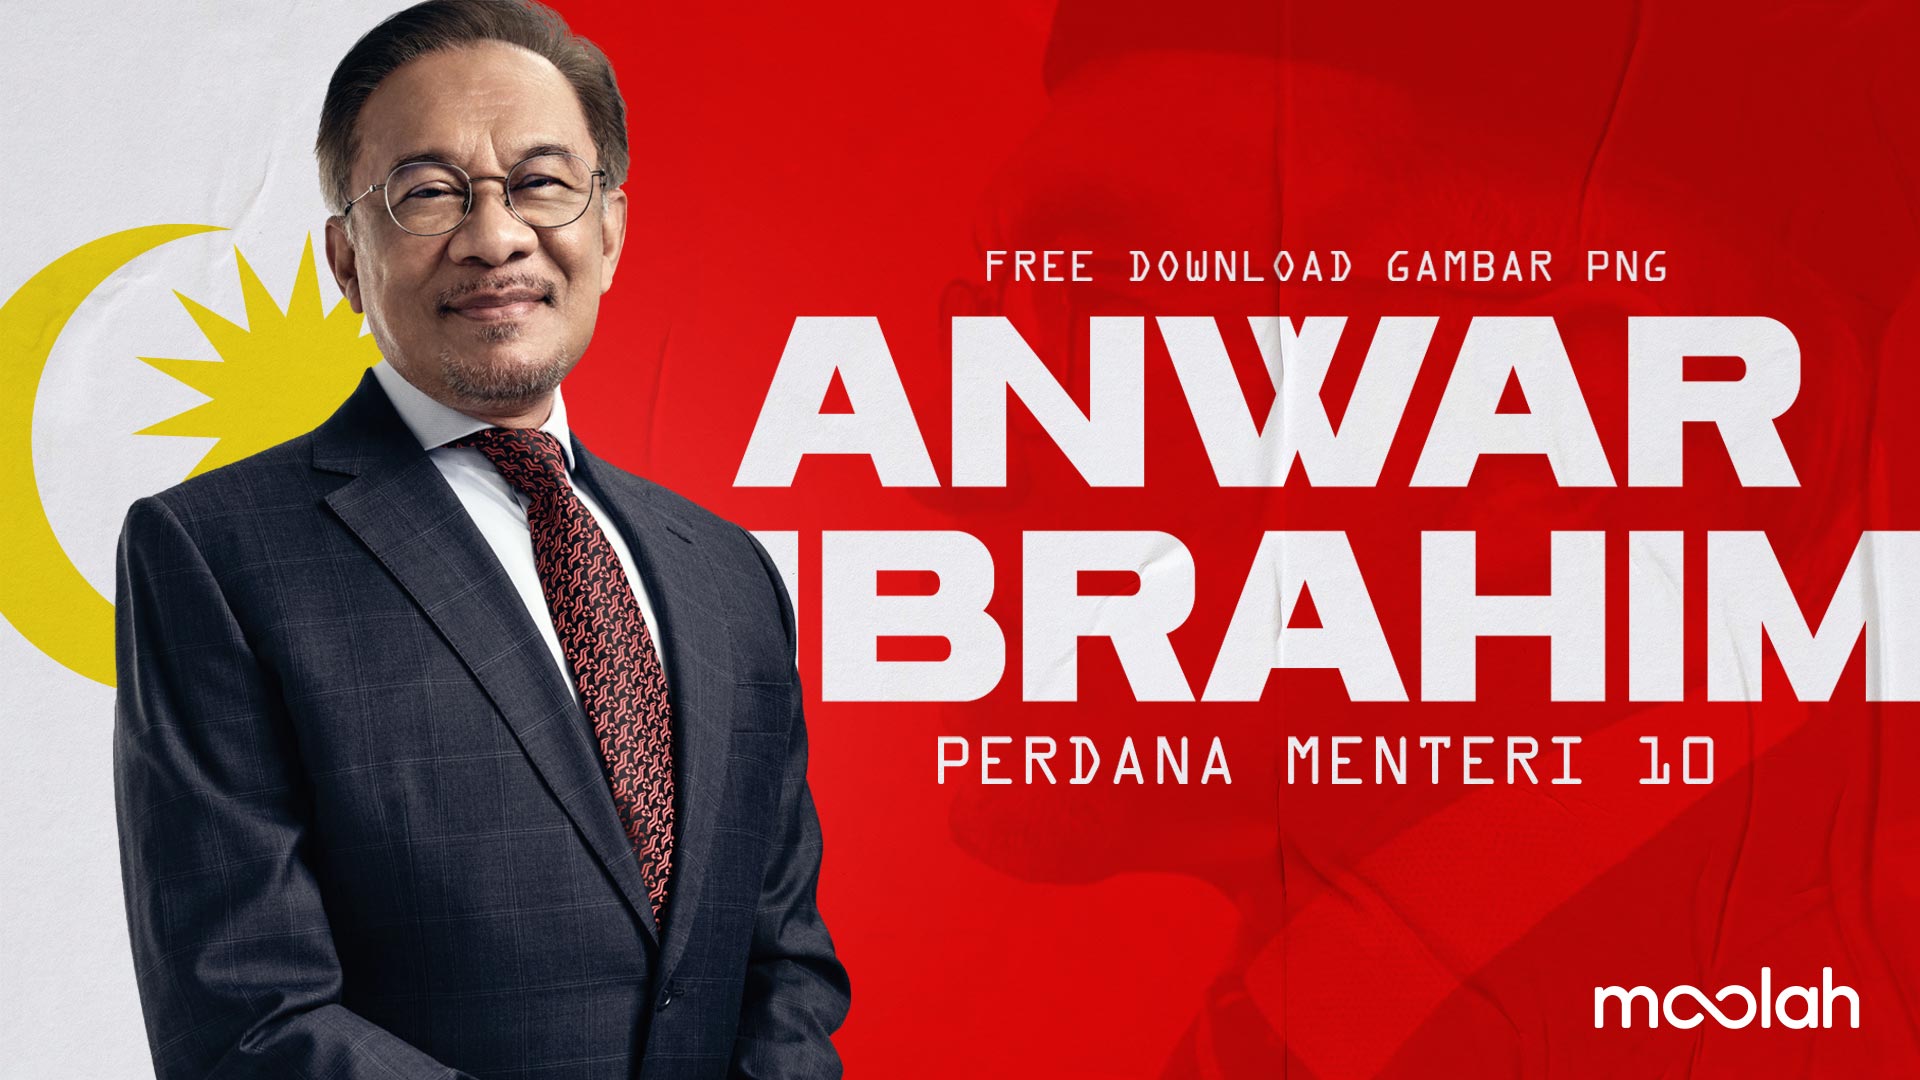 Free Download Gambar Anwar Ibrahim